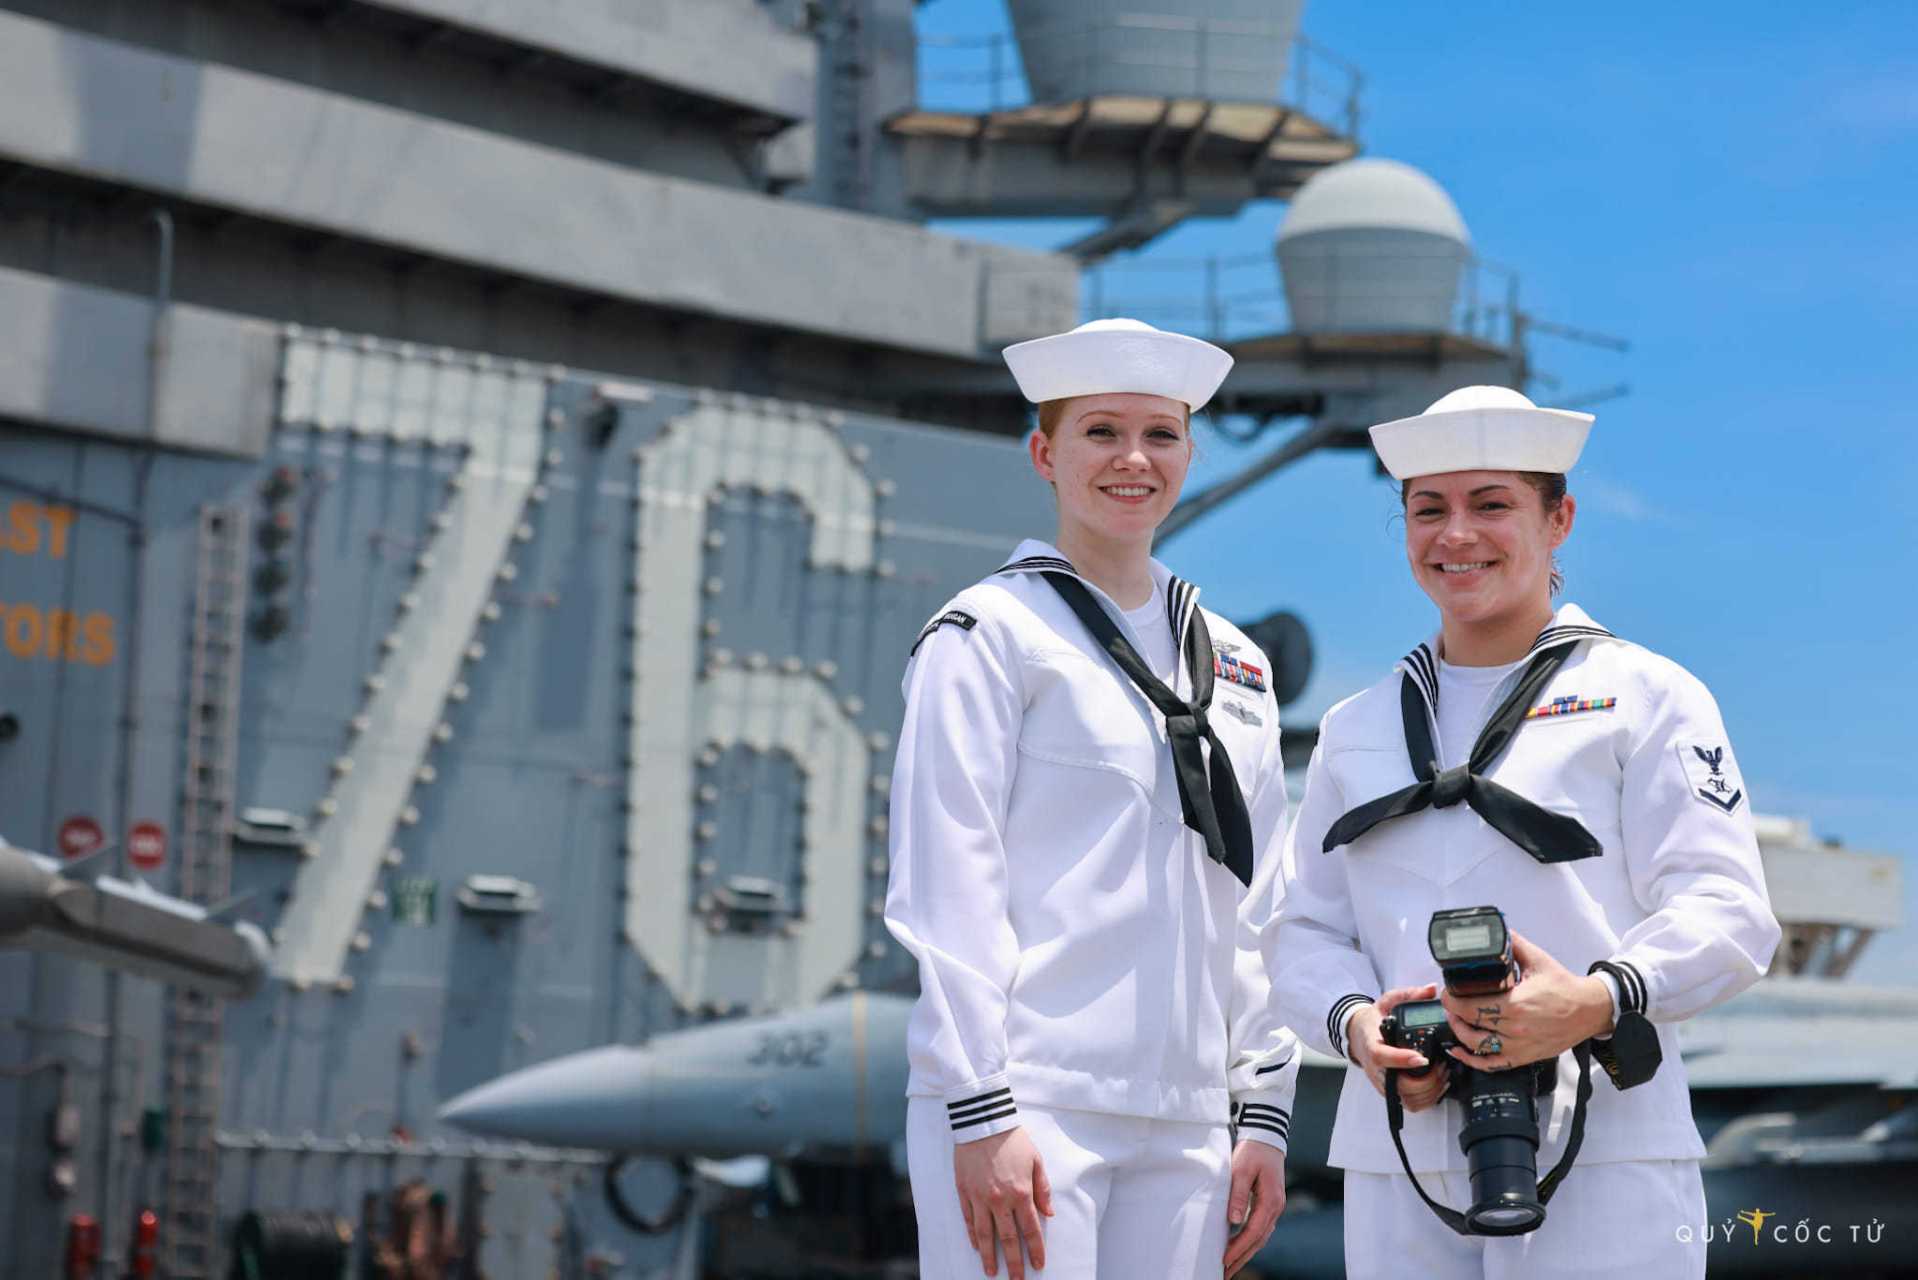 美国海军的女兵,你们看,美国女人的笑容跟我们中国女人就是不一样